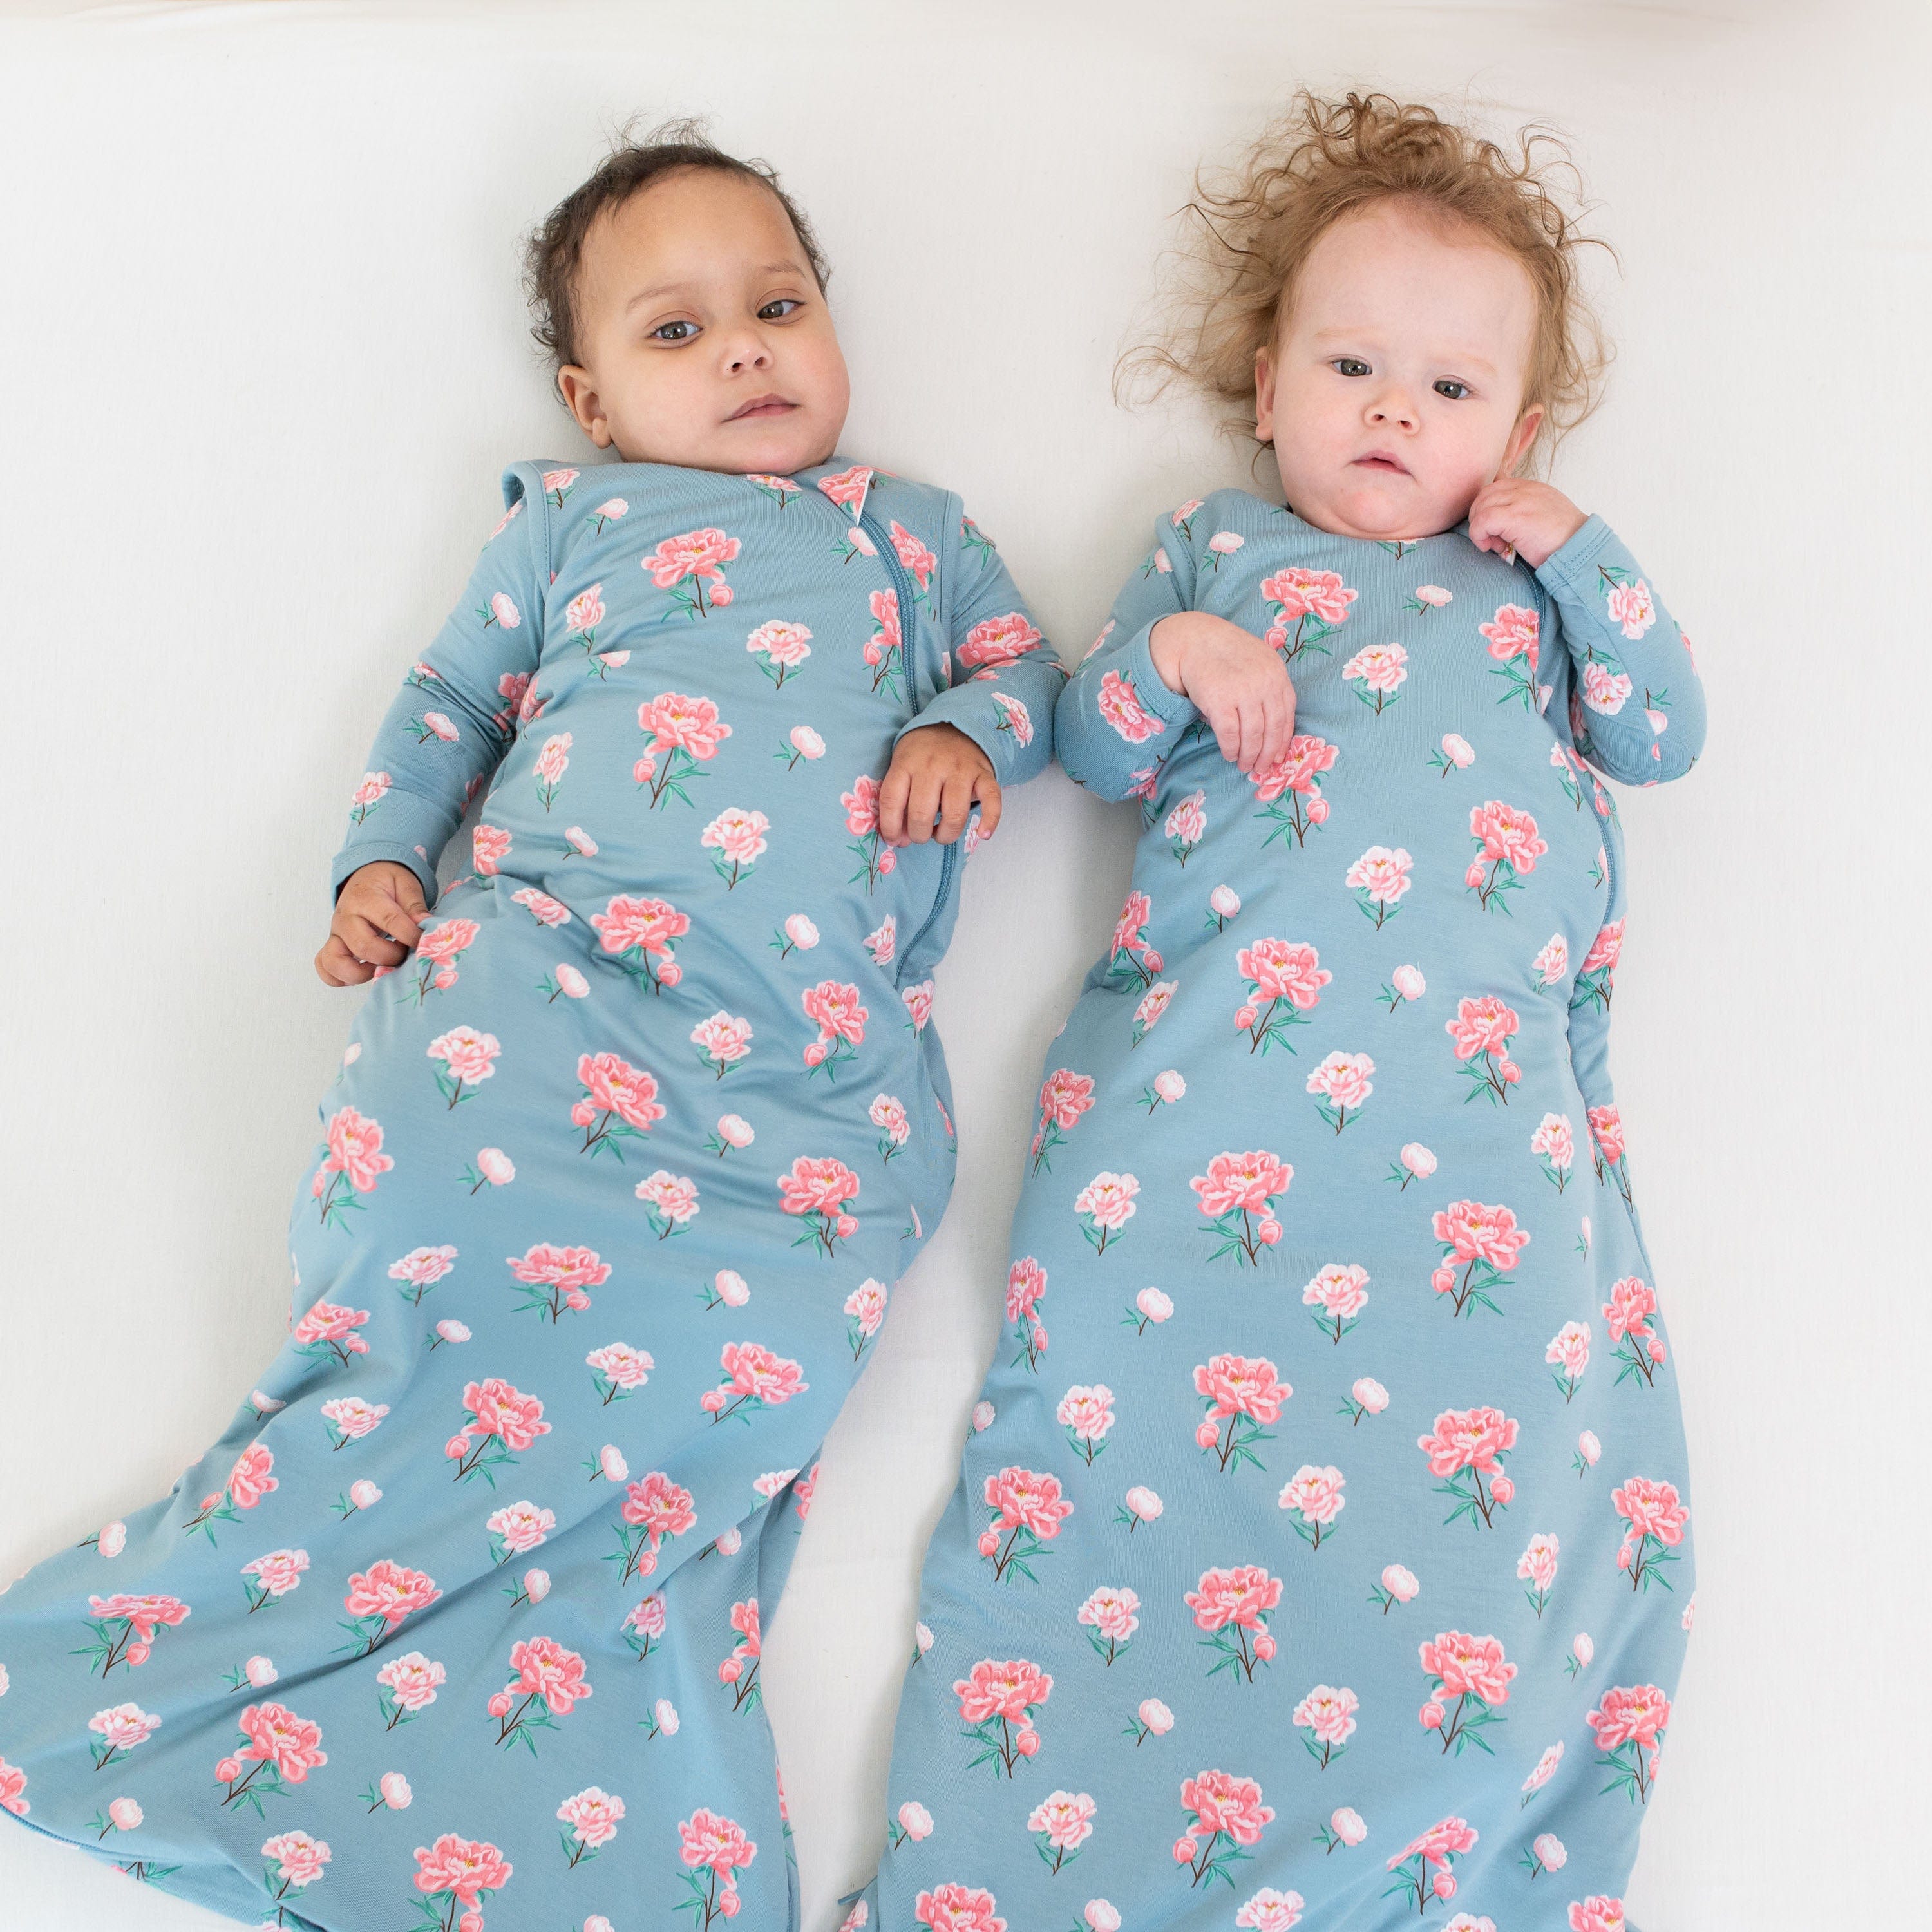 Babies wearing Kyte Baby sleep bags TOG 1.0 in Peony pattern